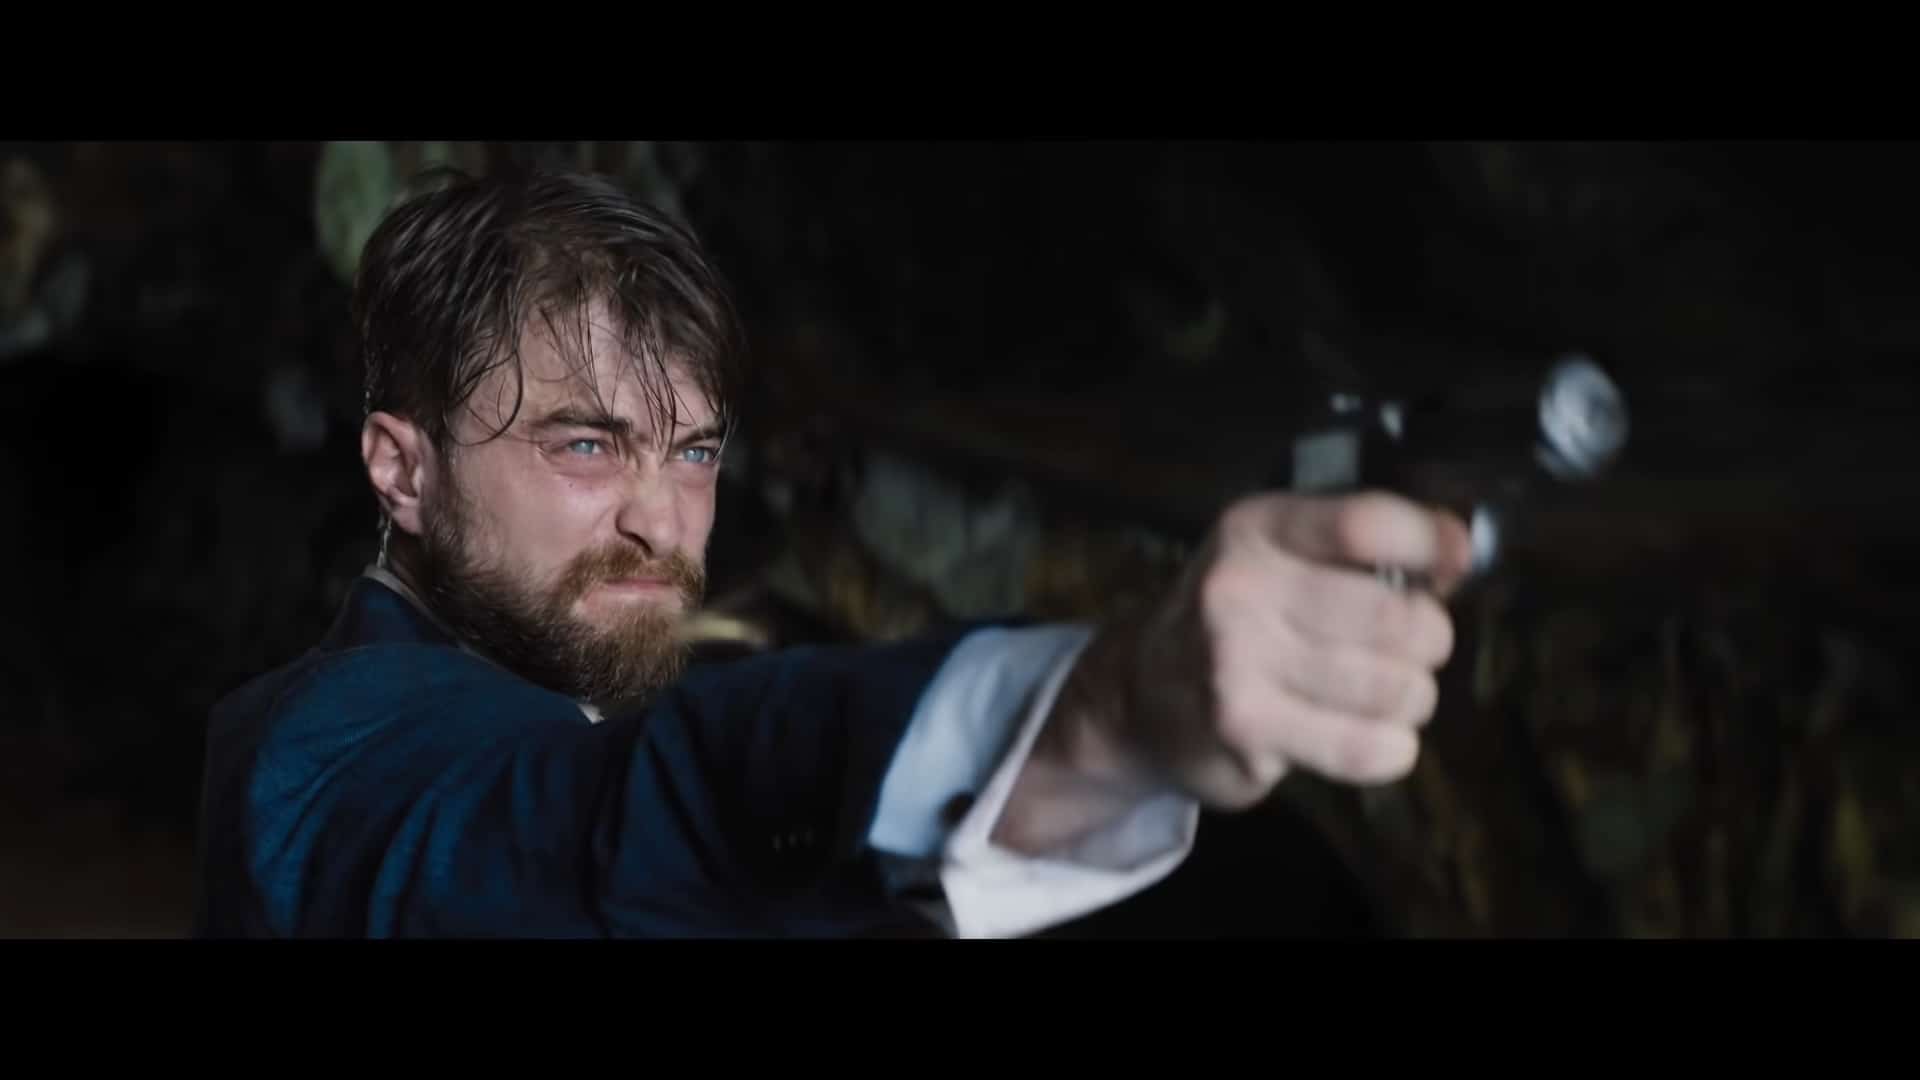 Abigail Fairfax (Daniel Radcliffe) with a gun in hand